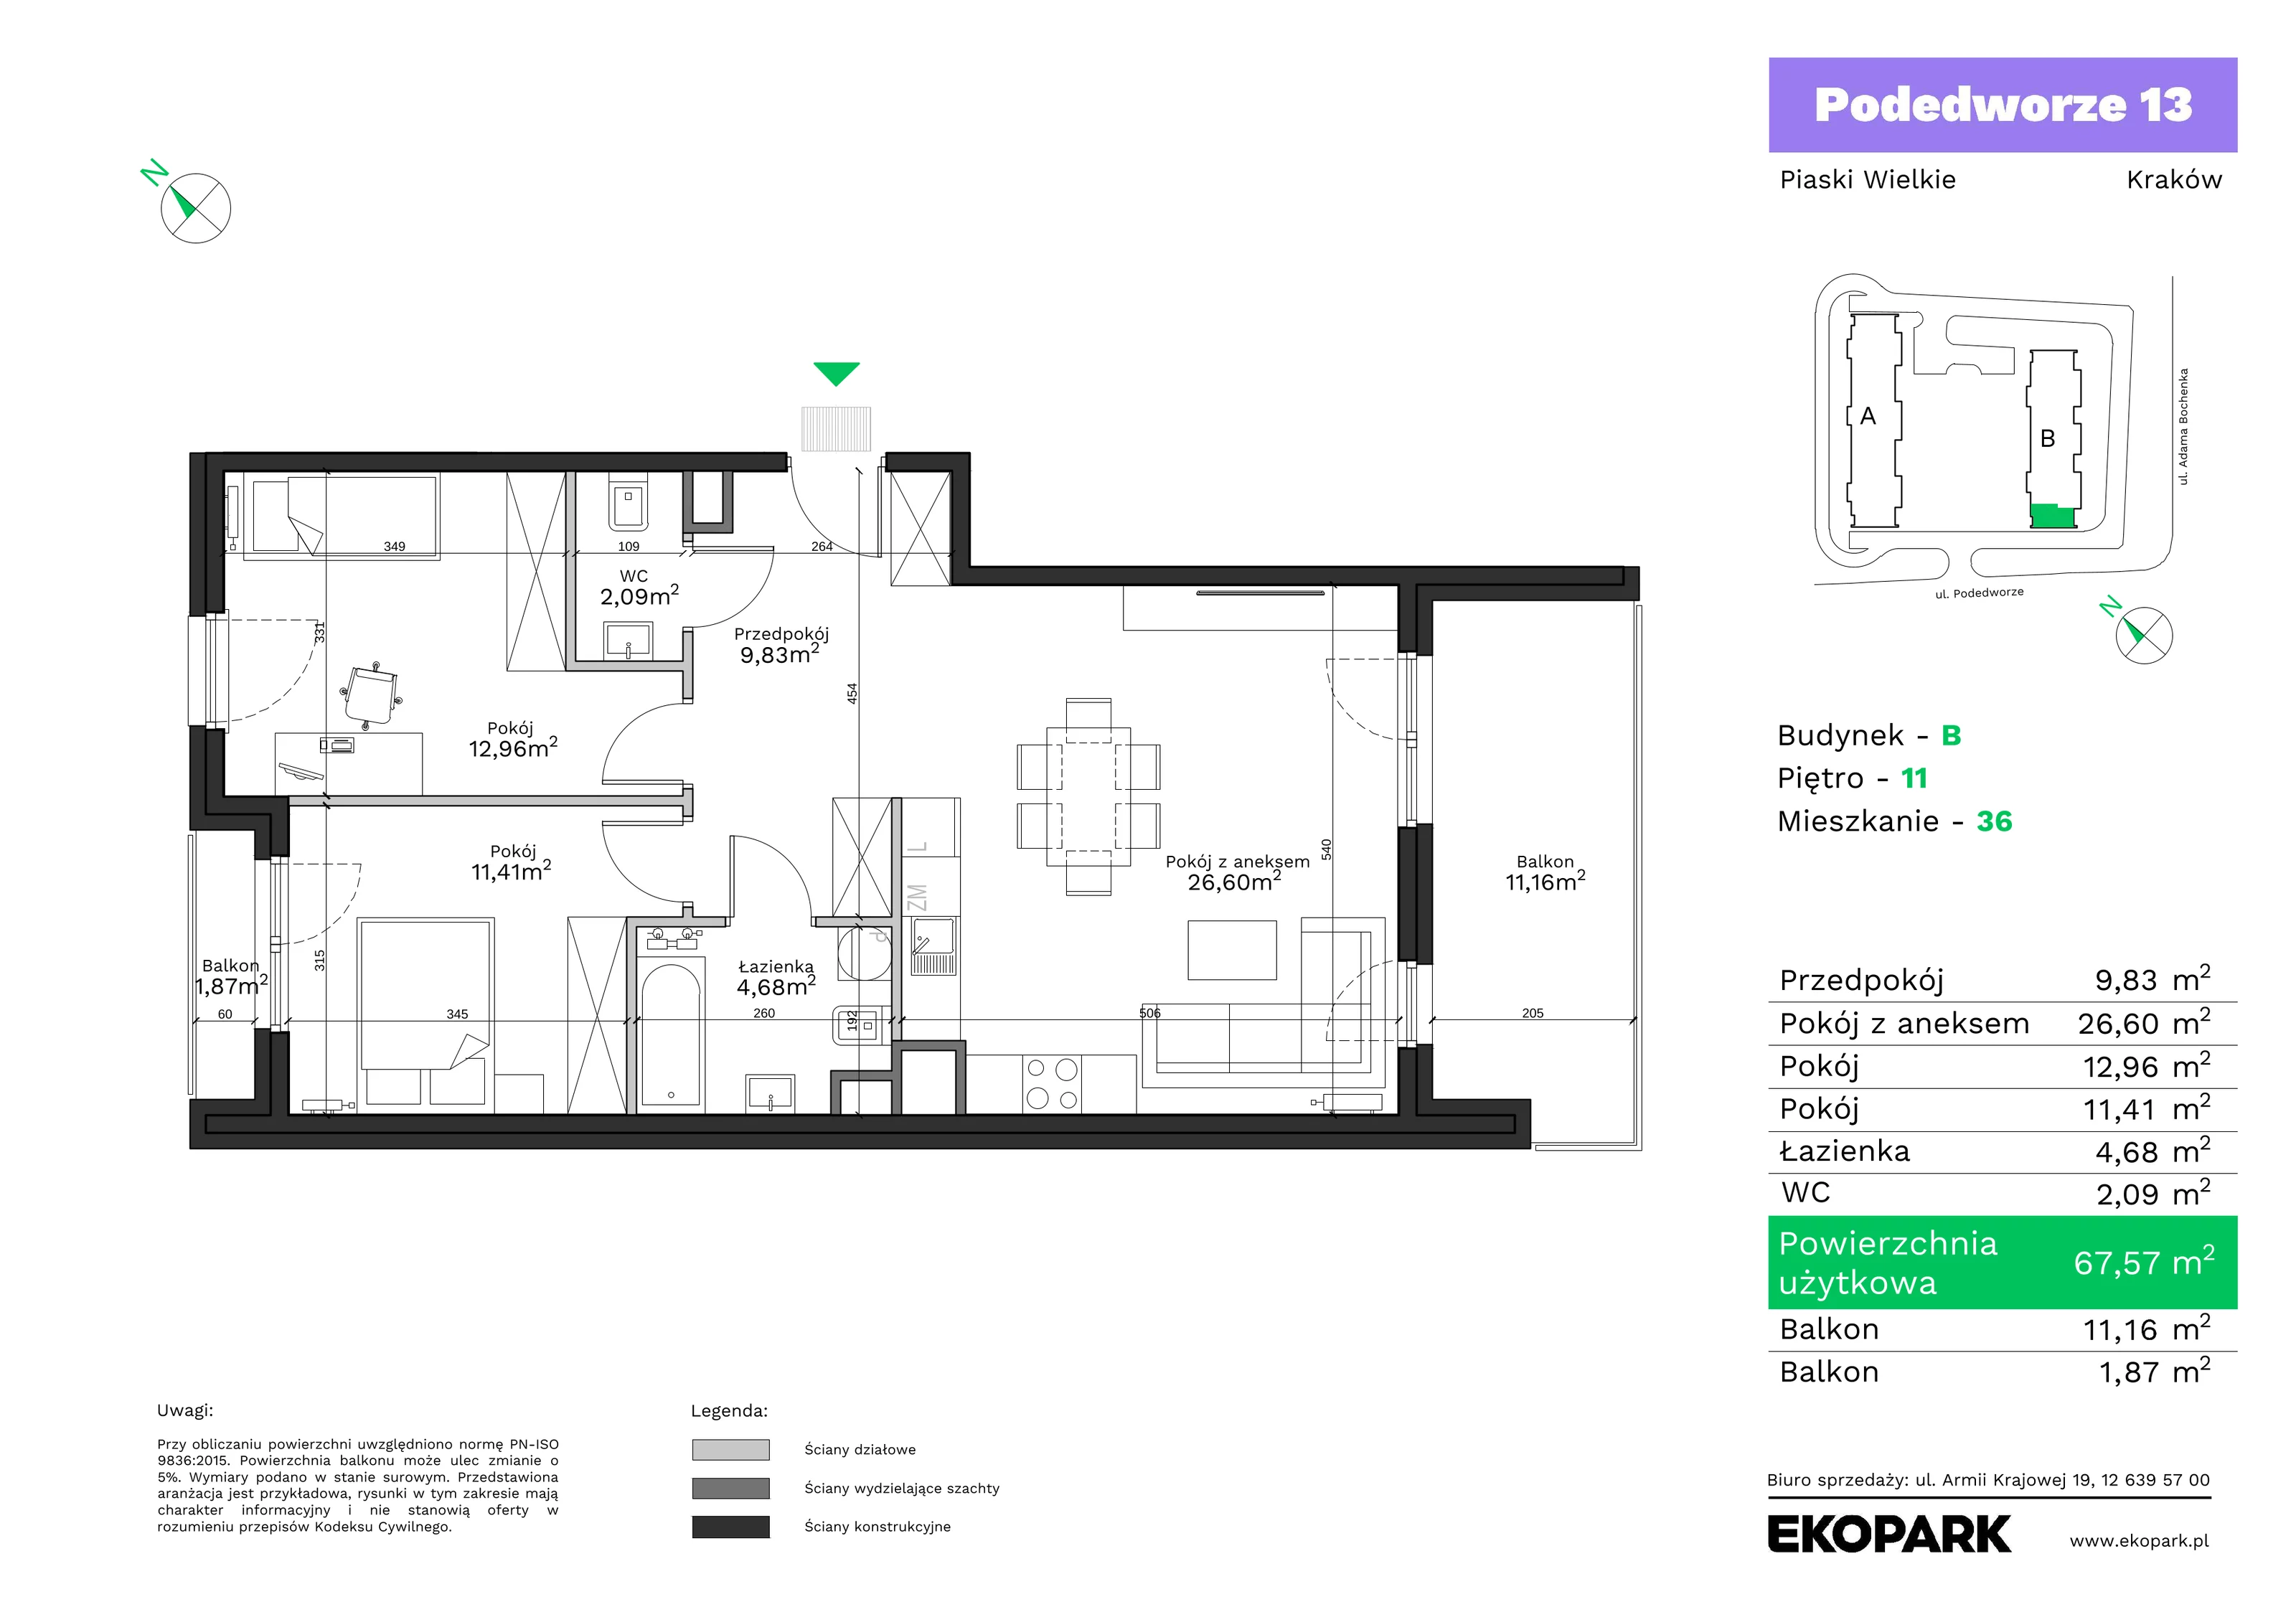 Mieszkanie 67,57 m², piętro 11, oferta nr B36, Podedworze 13, Kraków, Podgórze Duchackie, Piaski Wielkie, ul. Podedworze 13